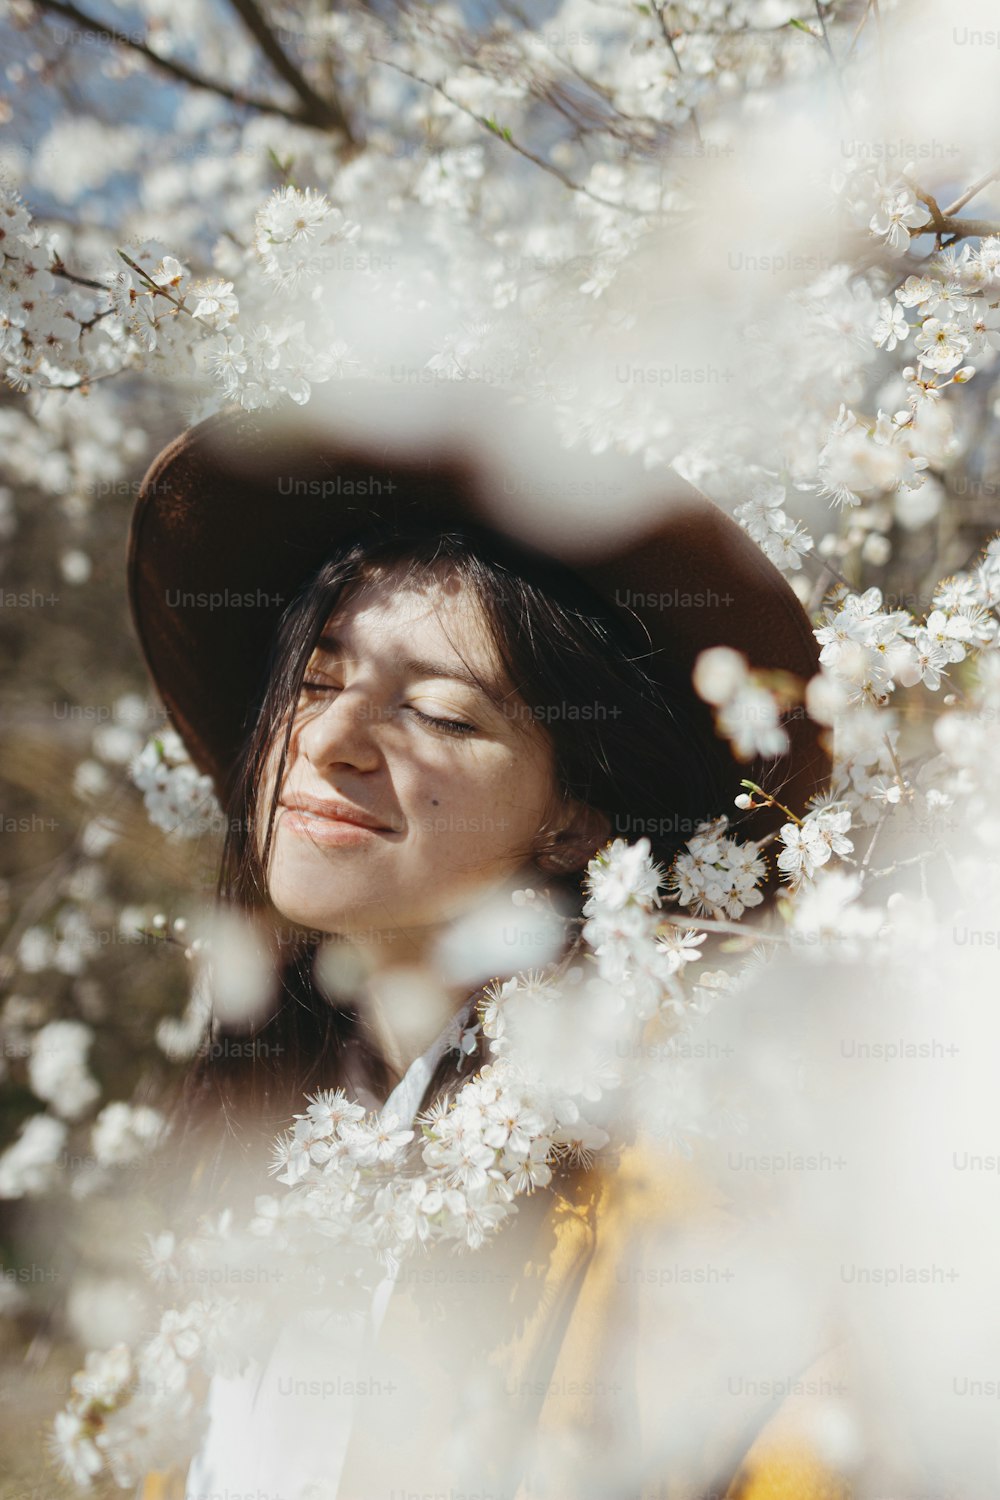 Ritratto di giovane femmina bruna felice in giacca gialla che abbraccia in fiori bianchi. Bella donna elegante in cappello che posa sensualmente tra i rami di ciliegio in fiore nella primavera soleggiata, momento calmo